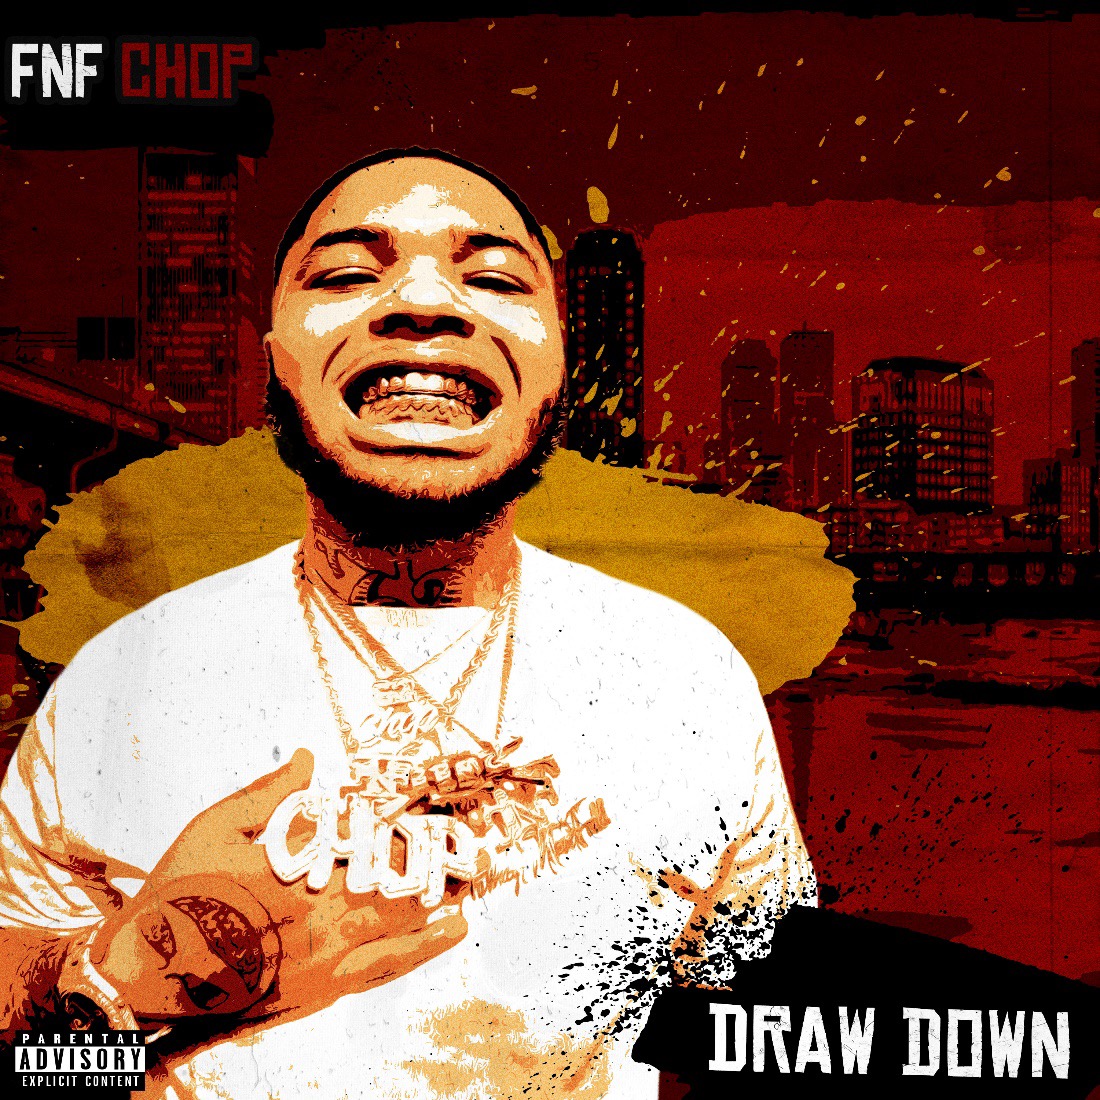 FNF CHOP DRAW DOWN